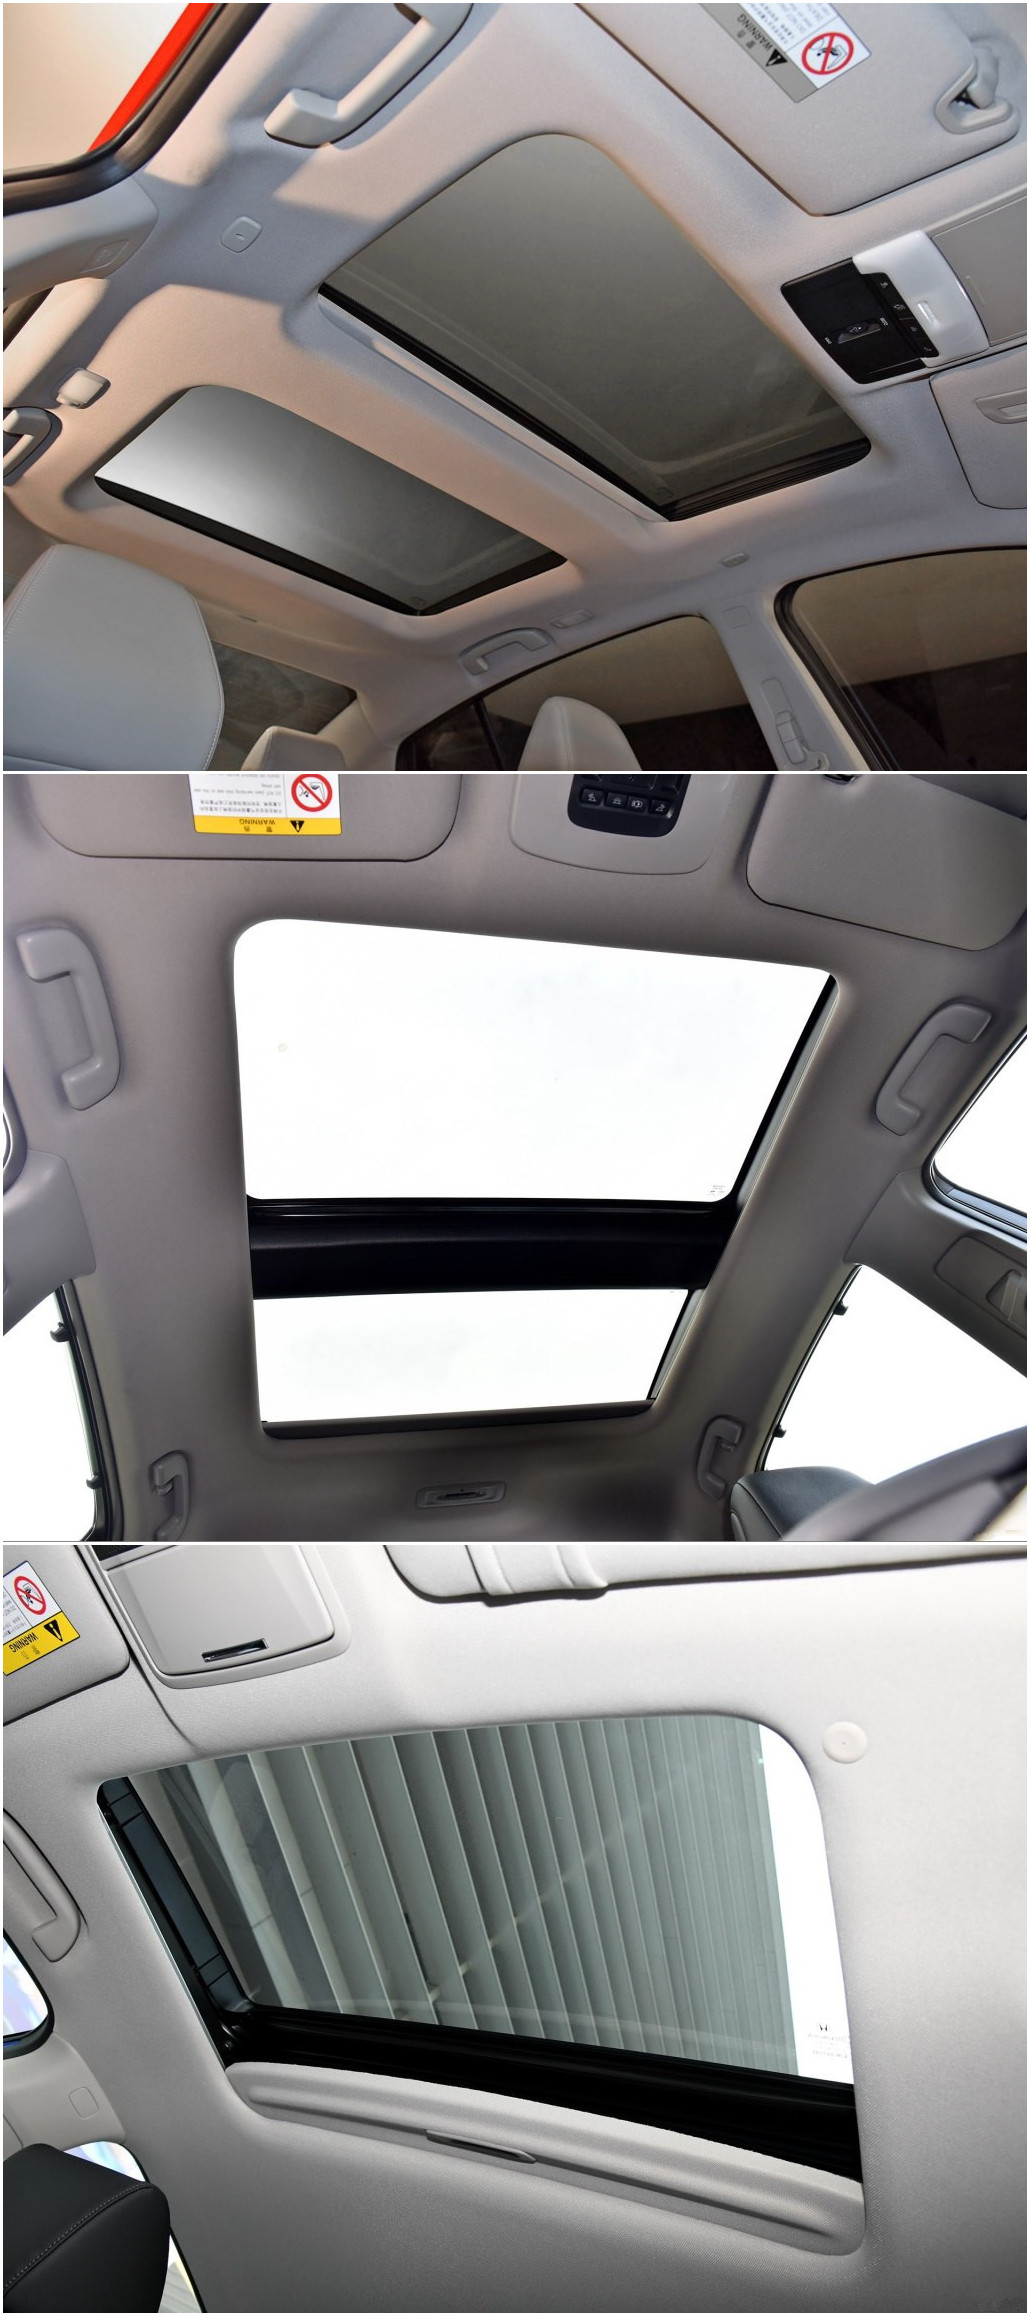 三辆车的天窗,雅阁因为是低配所以面积比较小,凯美瑞用的是全景天窗